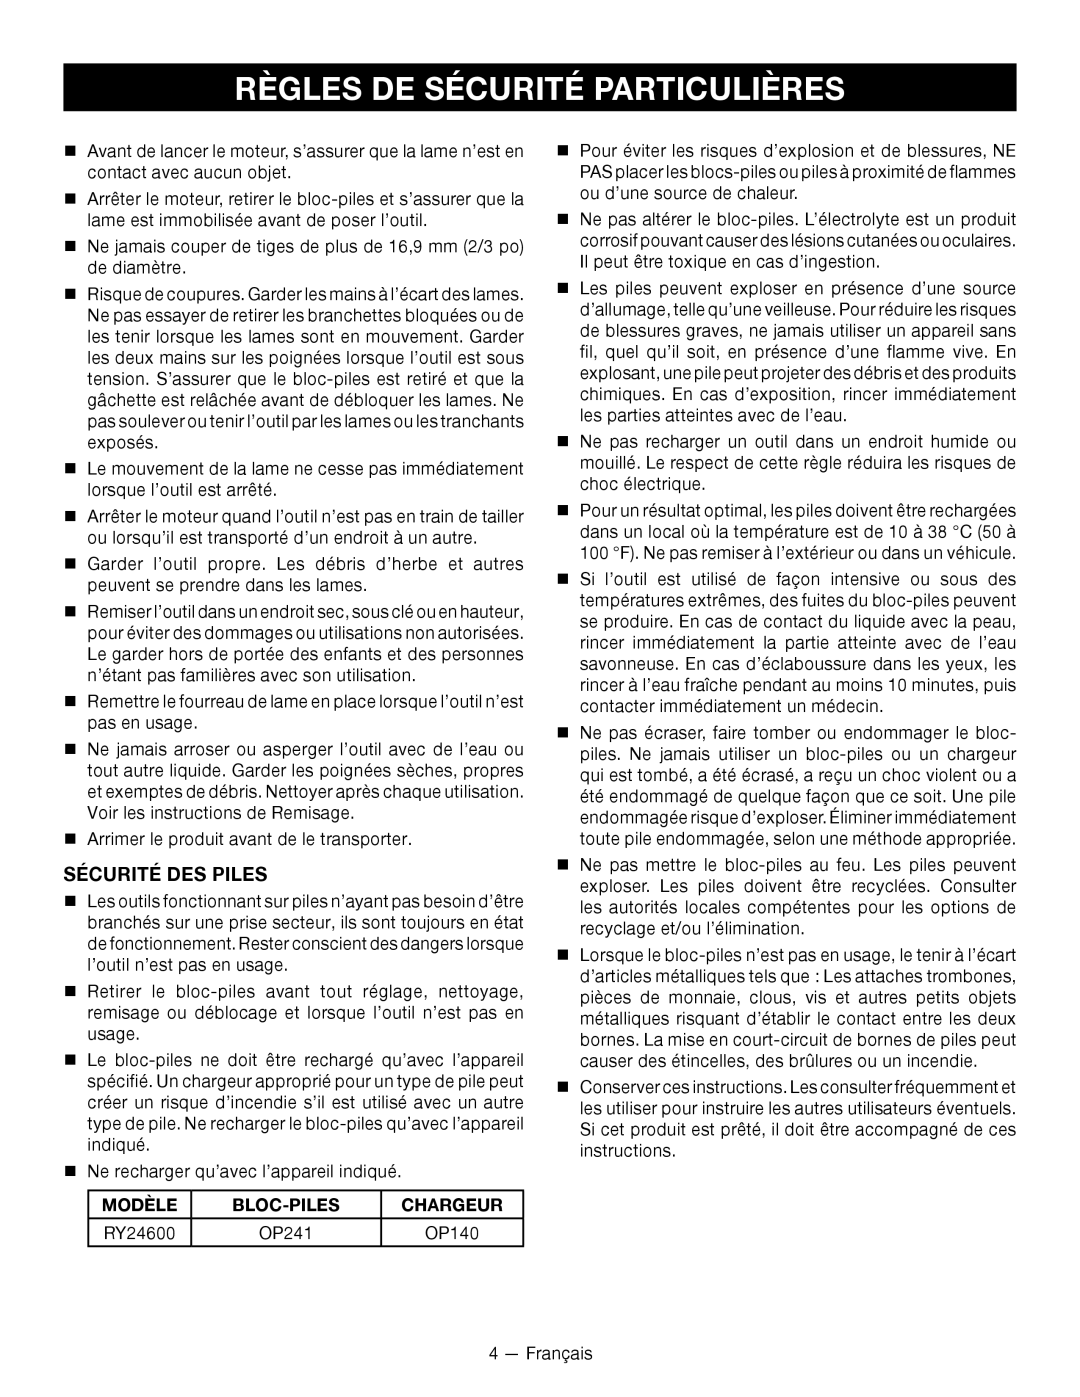 Ryobi RY24600 Règles De Sécurité Particulières, Sécurité Des Piles, Modèle, Bloc-Piles, Chargeur, OP241, OP140 